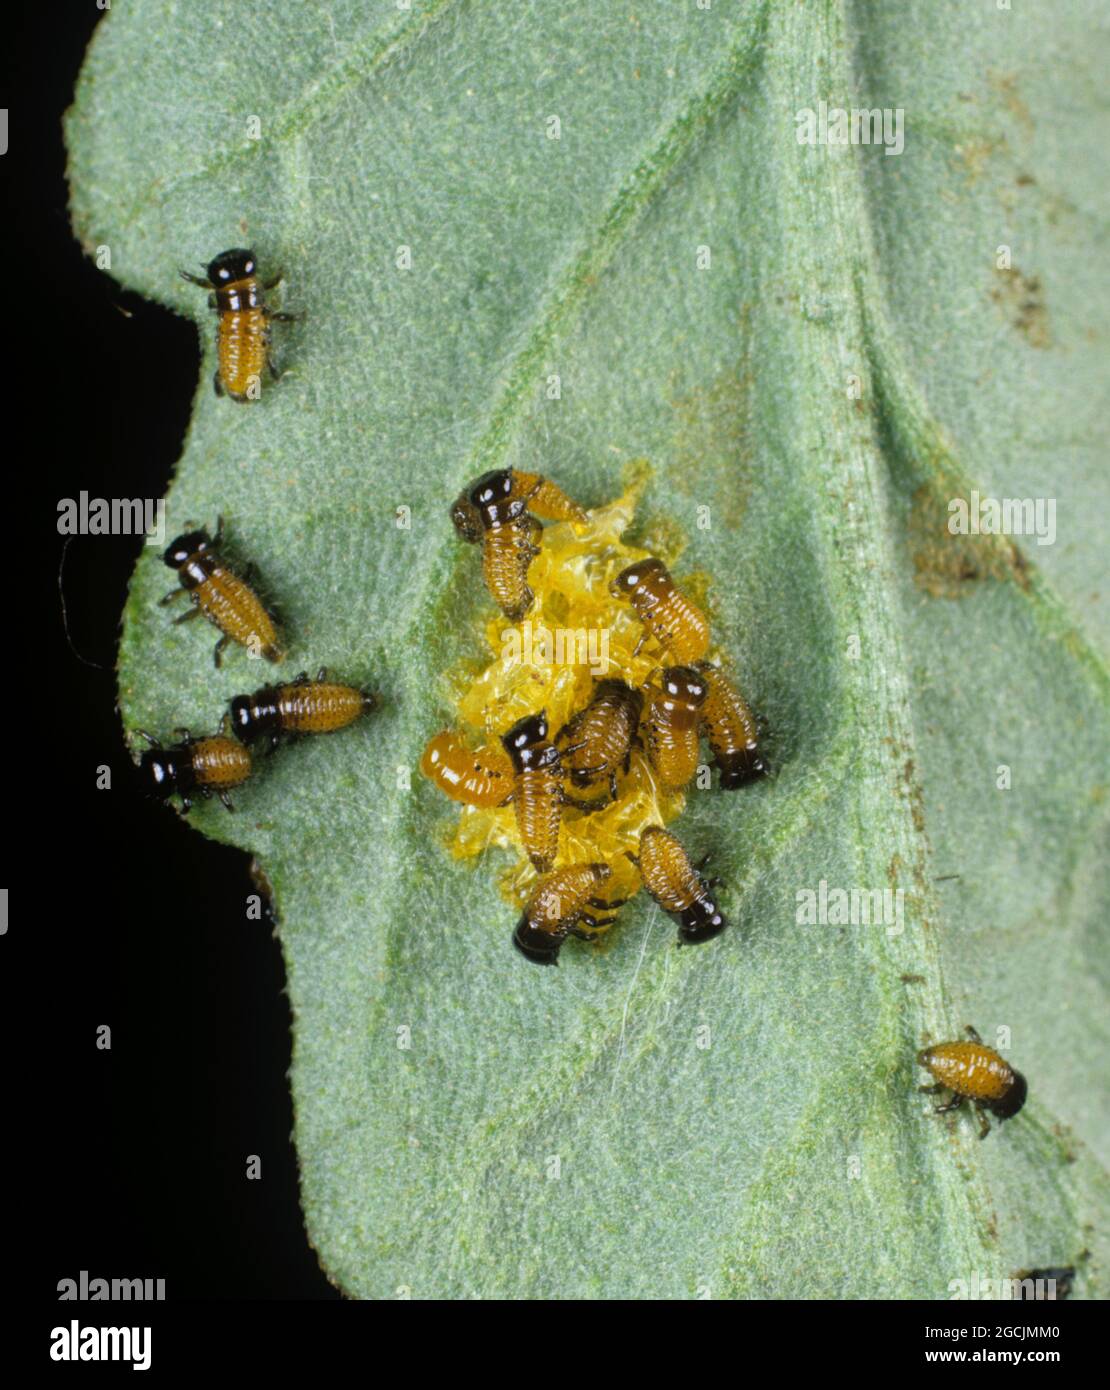 Eierfloß mit neu geschlüpften Kolorado-Käfer (Leptinotarsa decemlineata)-Larven, die sich von Eierfällen ernähren, die auf einem Tomatenblatt liegen, Italien Stockfoto